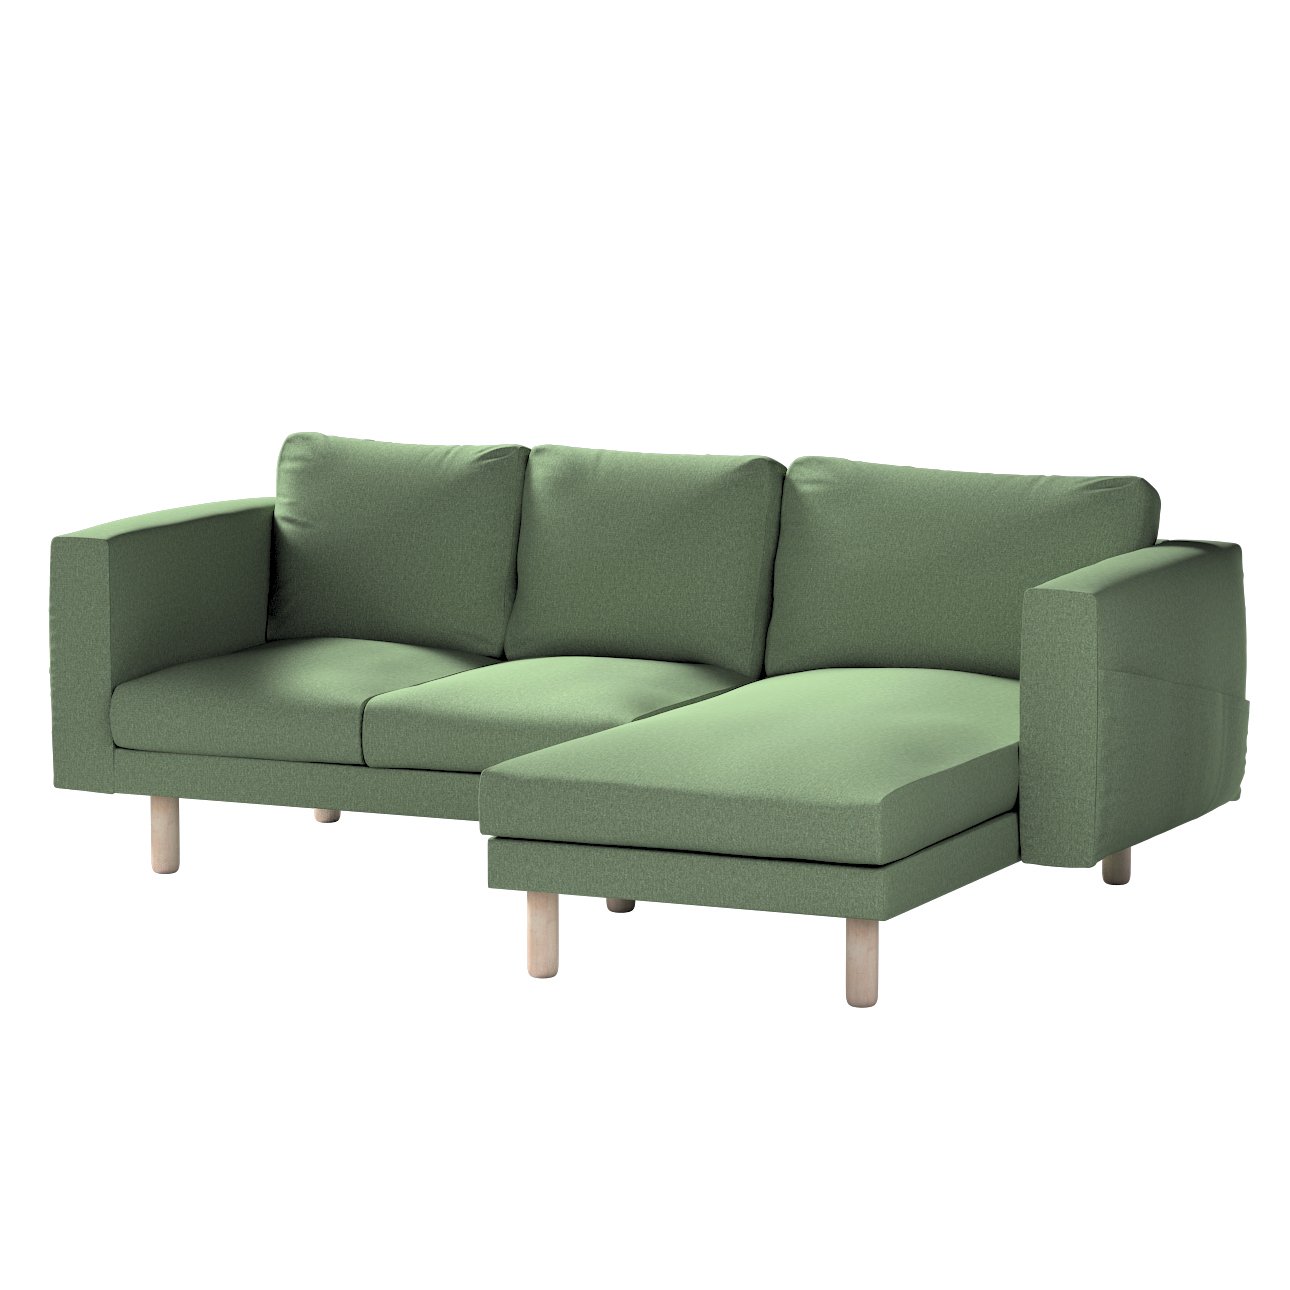 Dekoria Poťah na sedačku Norsborg s ležadlom - 3 os., zelená, 231 x 88/157 x 85 cm, Amsterdam, 704-44